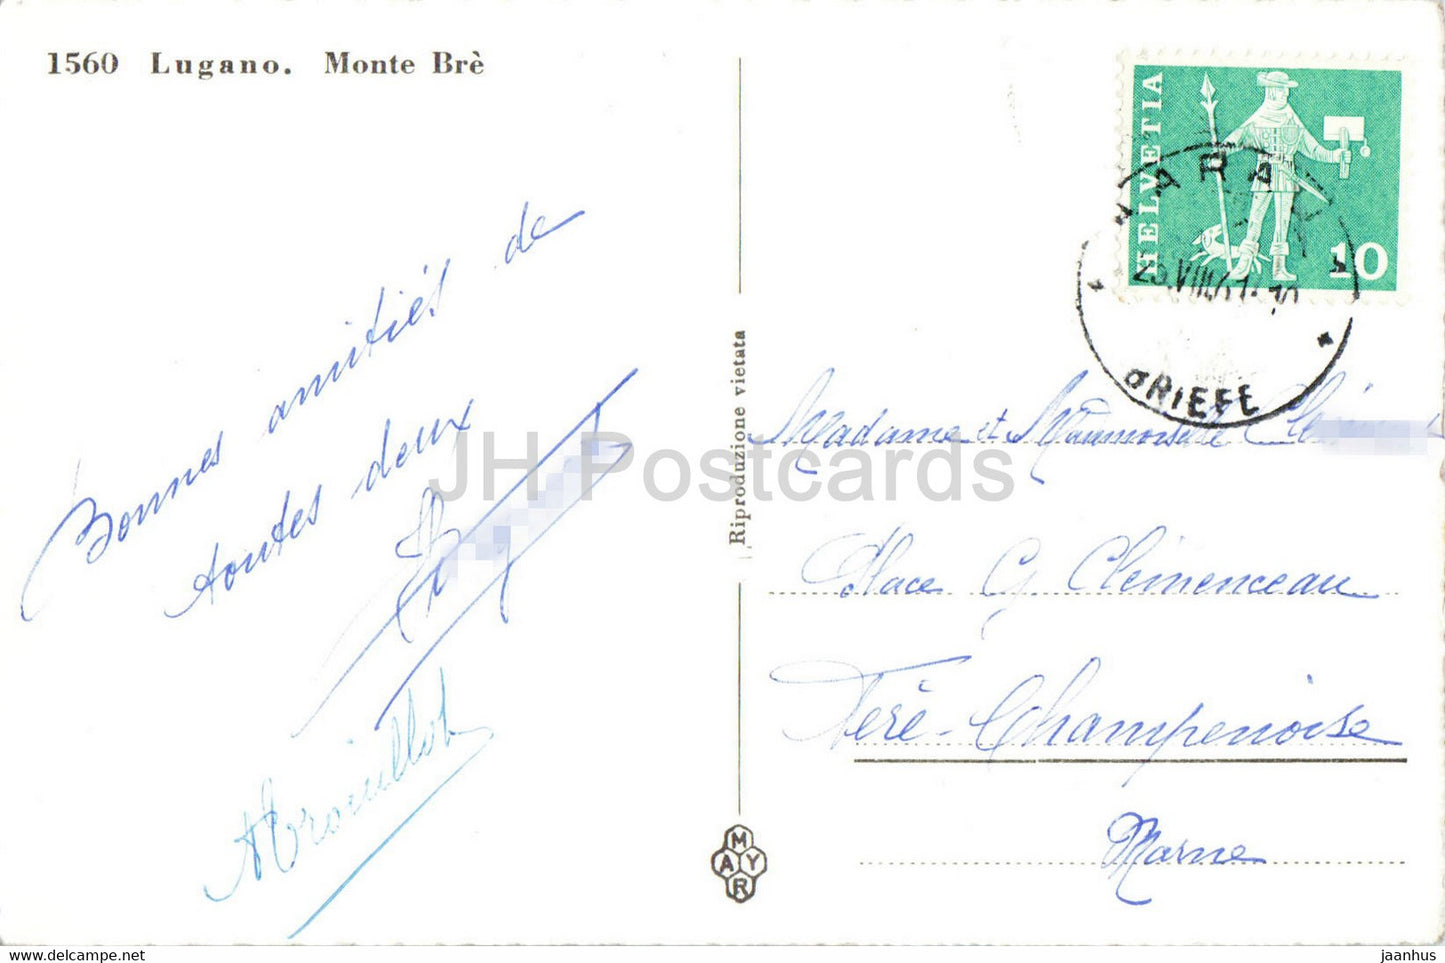 Lugano - Monte Bre - 1560 - carte postale ancienne - 1961 - Suisse - utilisé